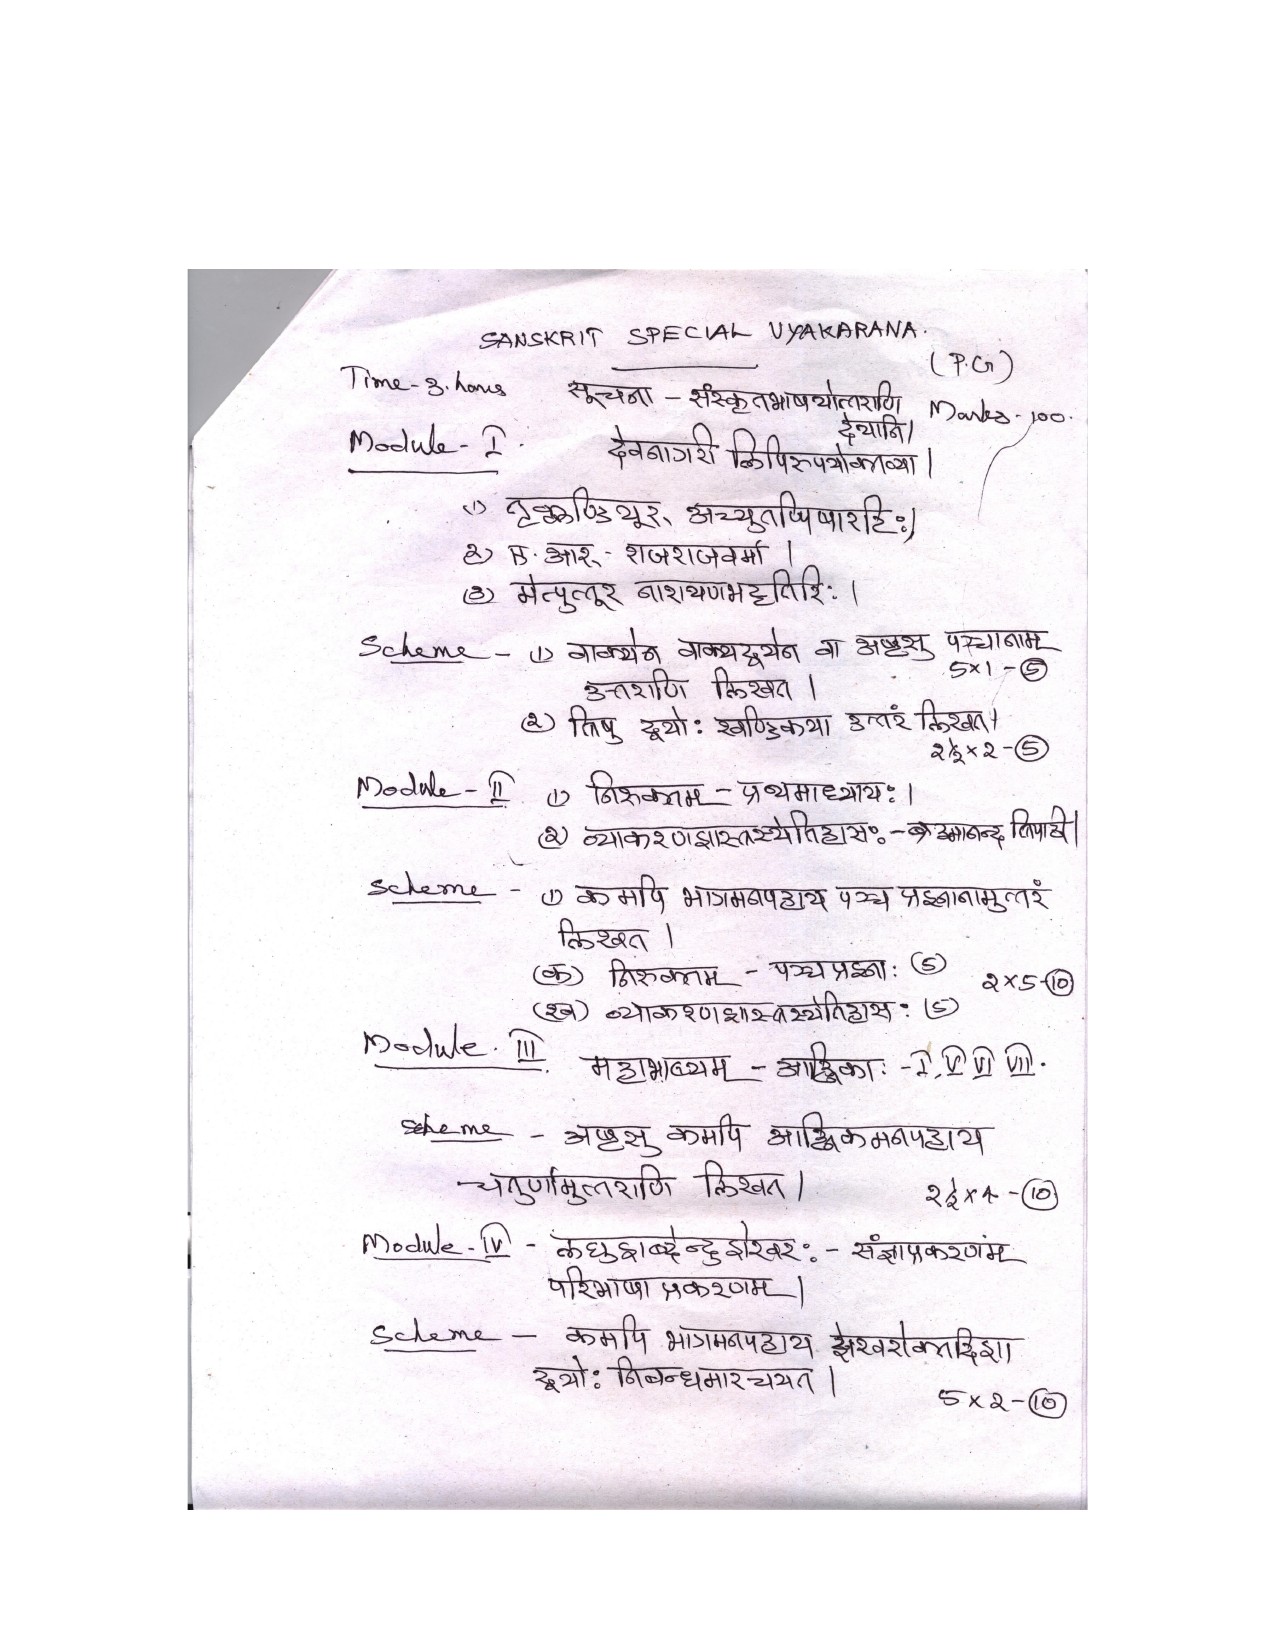 Sanskrit Syllabus for Kerala PSC 2021 Exam - Notification Image 16